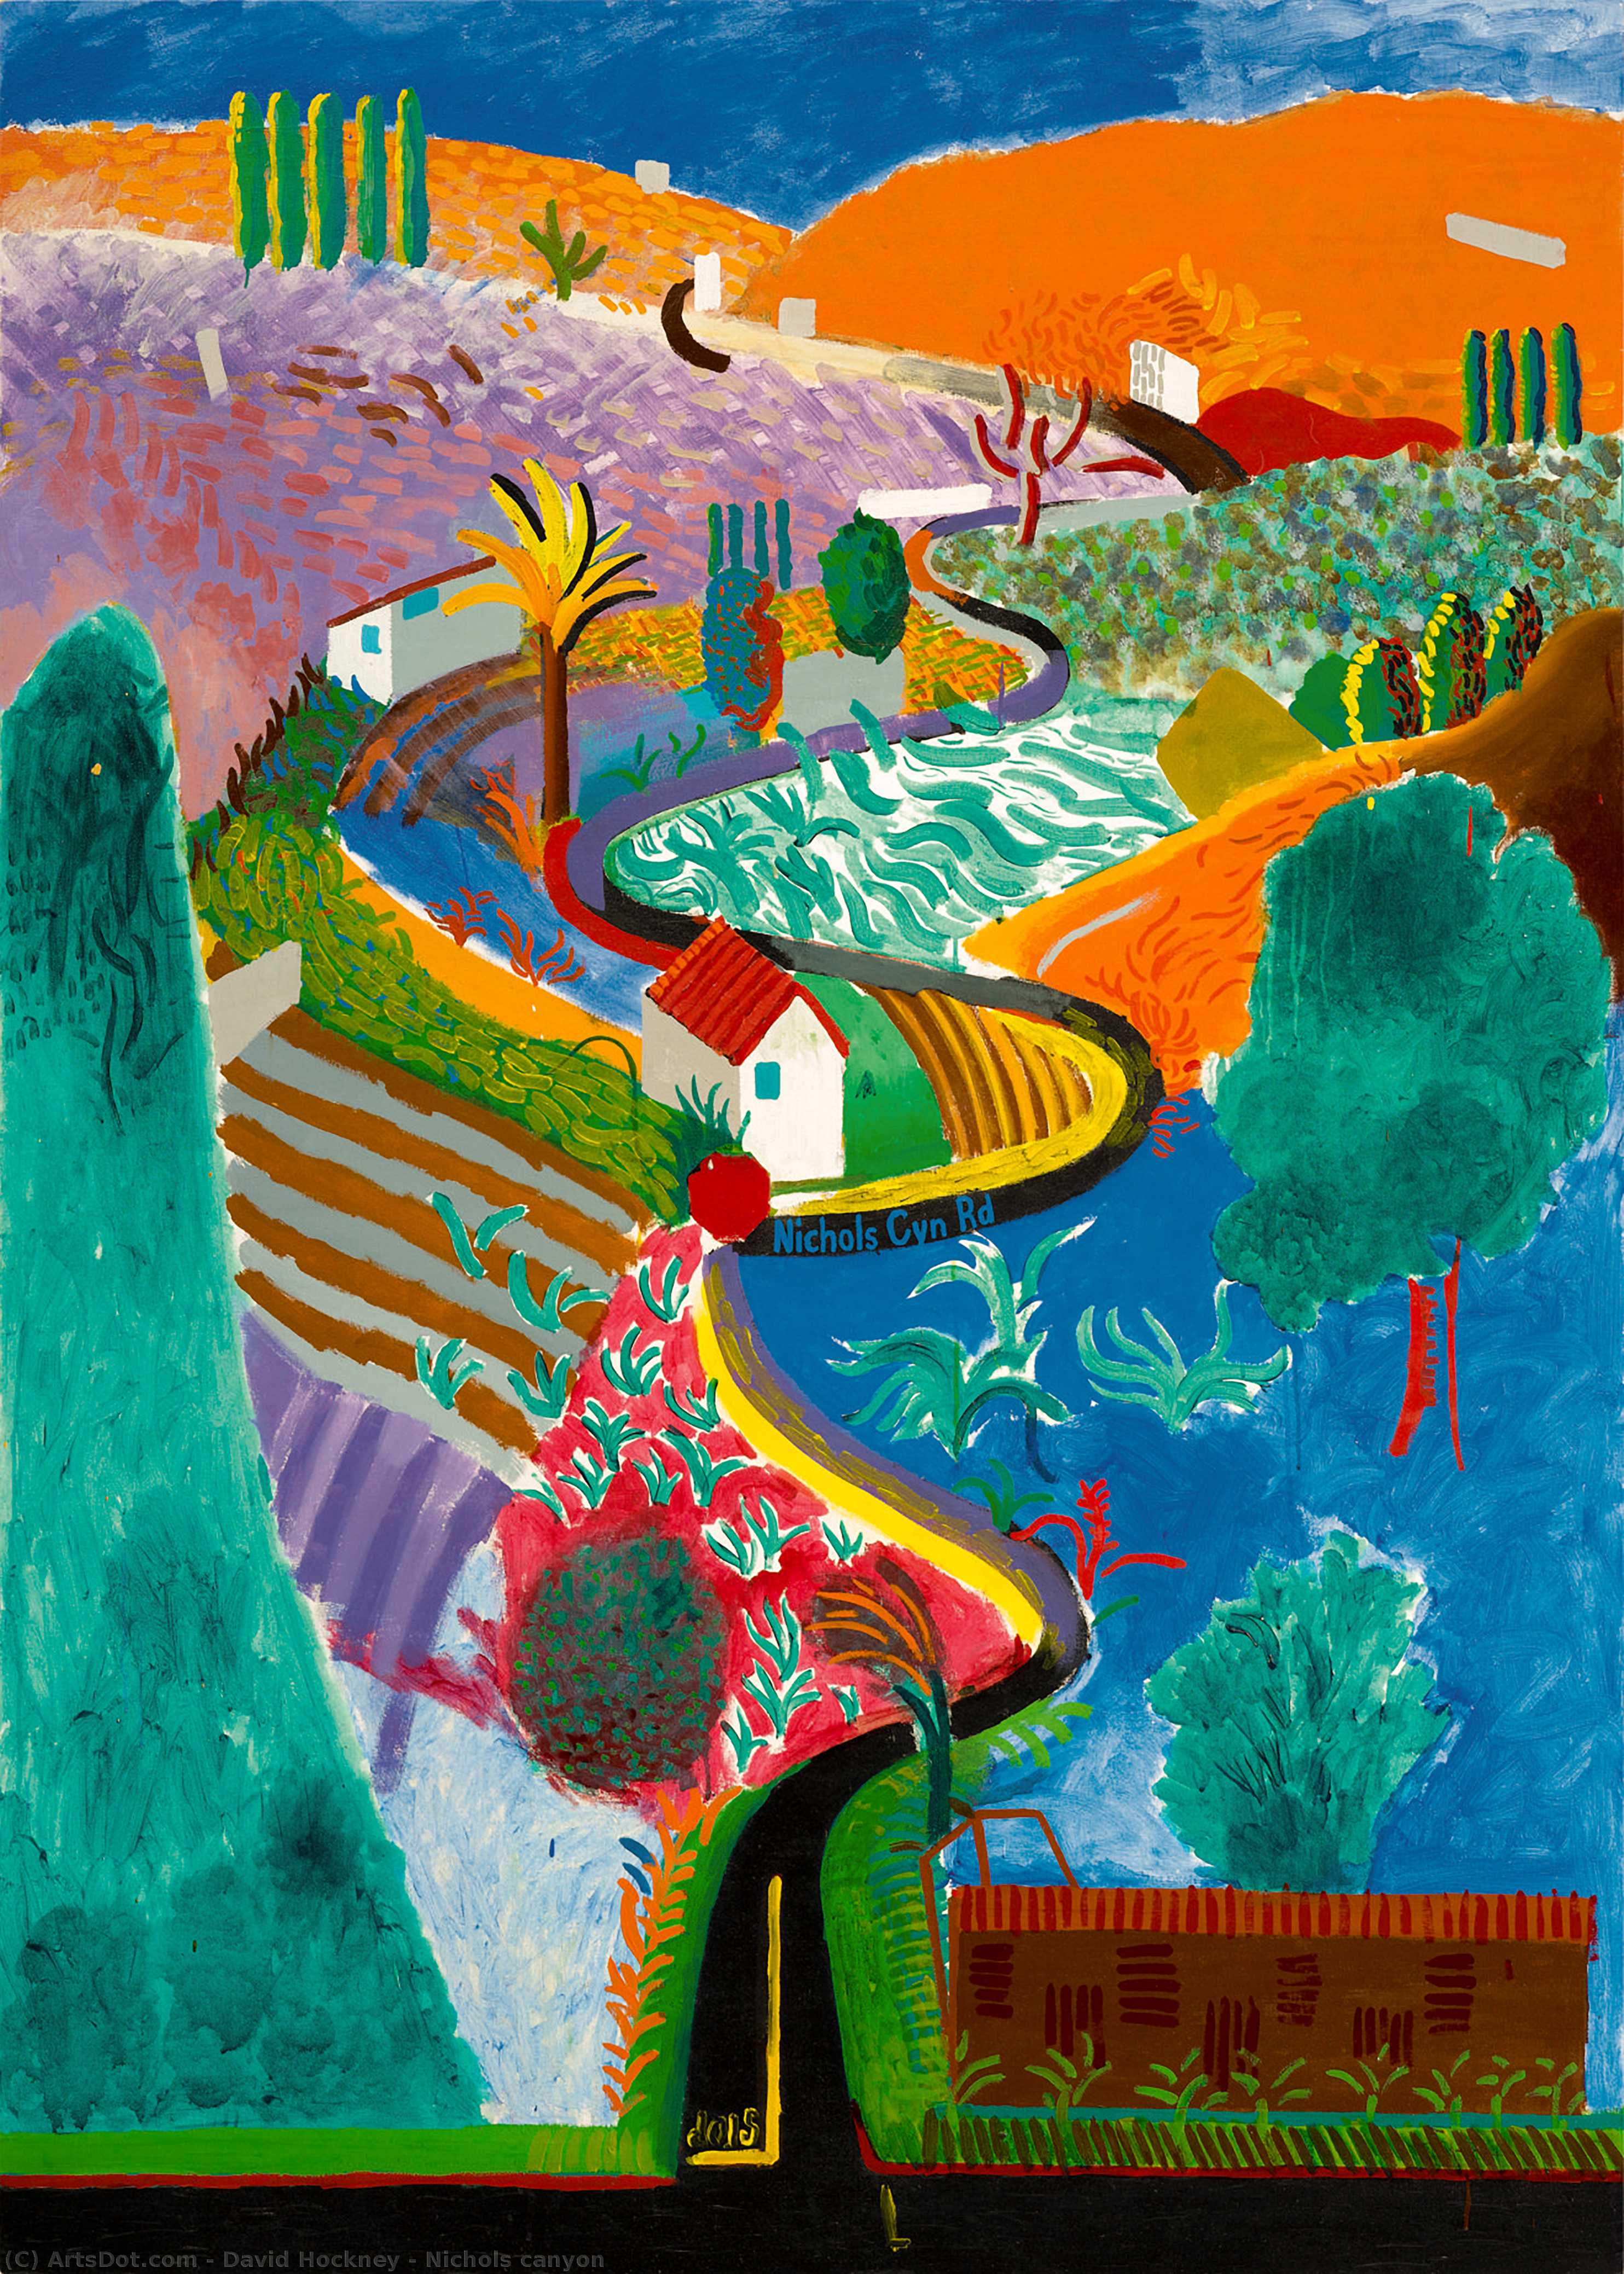 WikiOO.org - Enciklopedija likovnih umjetnosti - Slikarstvo, umjetnička djela David Hockney - Nichols canyon